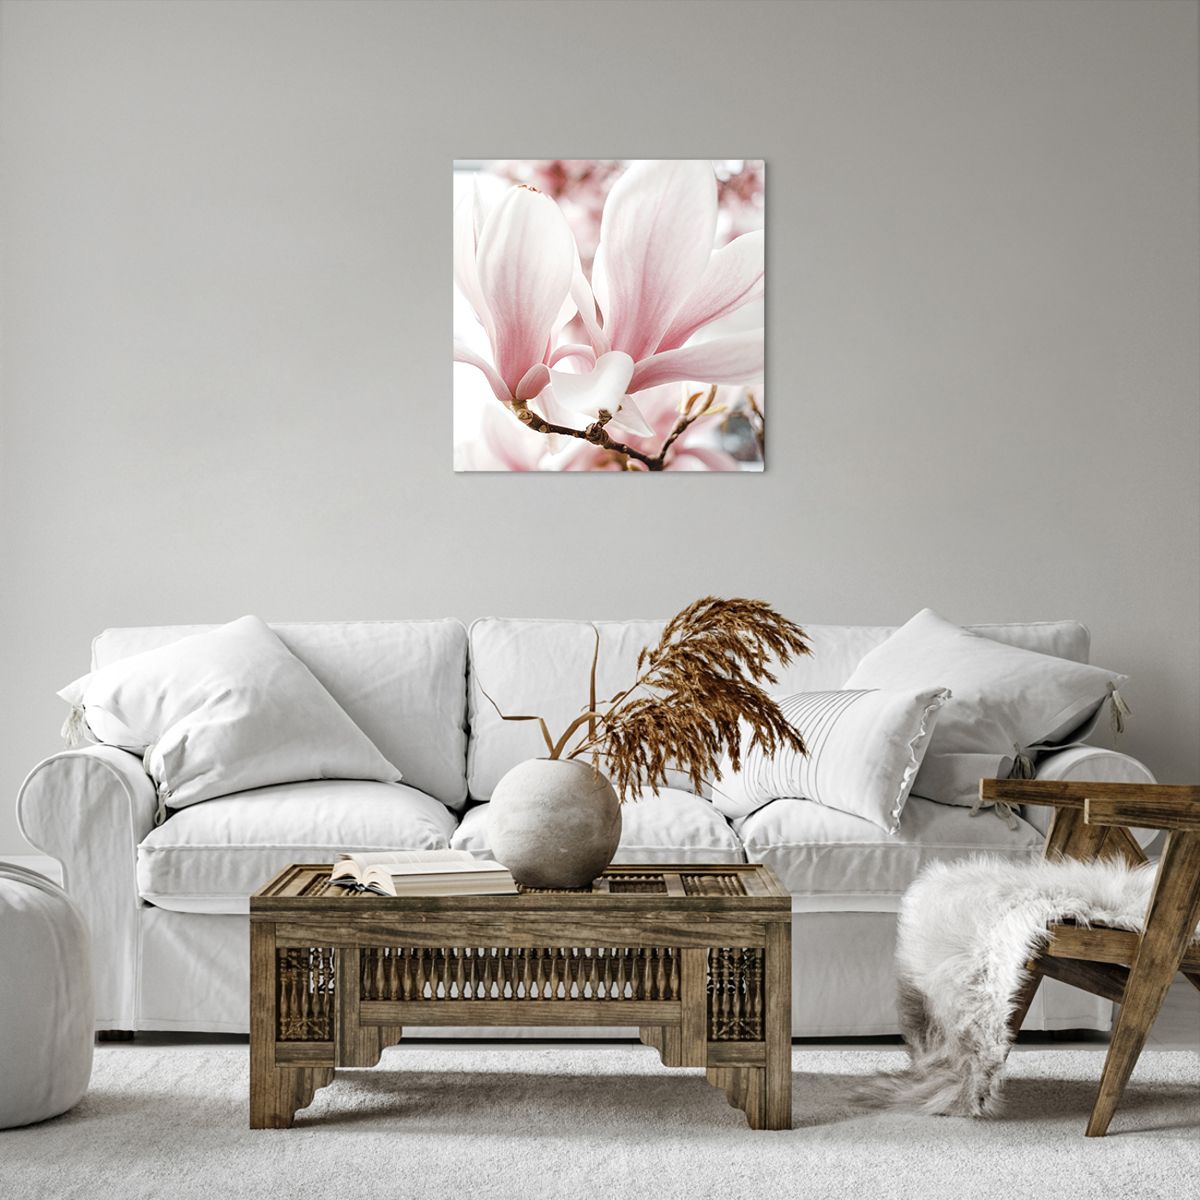 Obrazy na płótnie Gałązka Magnolii, Obrazy na płótnie Kwiat, Obrazy na płótnie Magnolia, Obrazy na płótnie Ogród, Obrazy na płótnie Natura